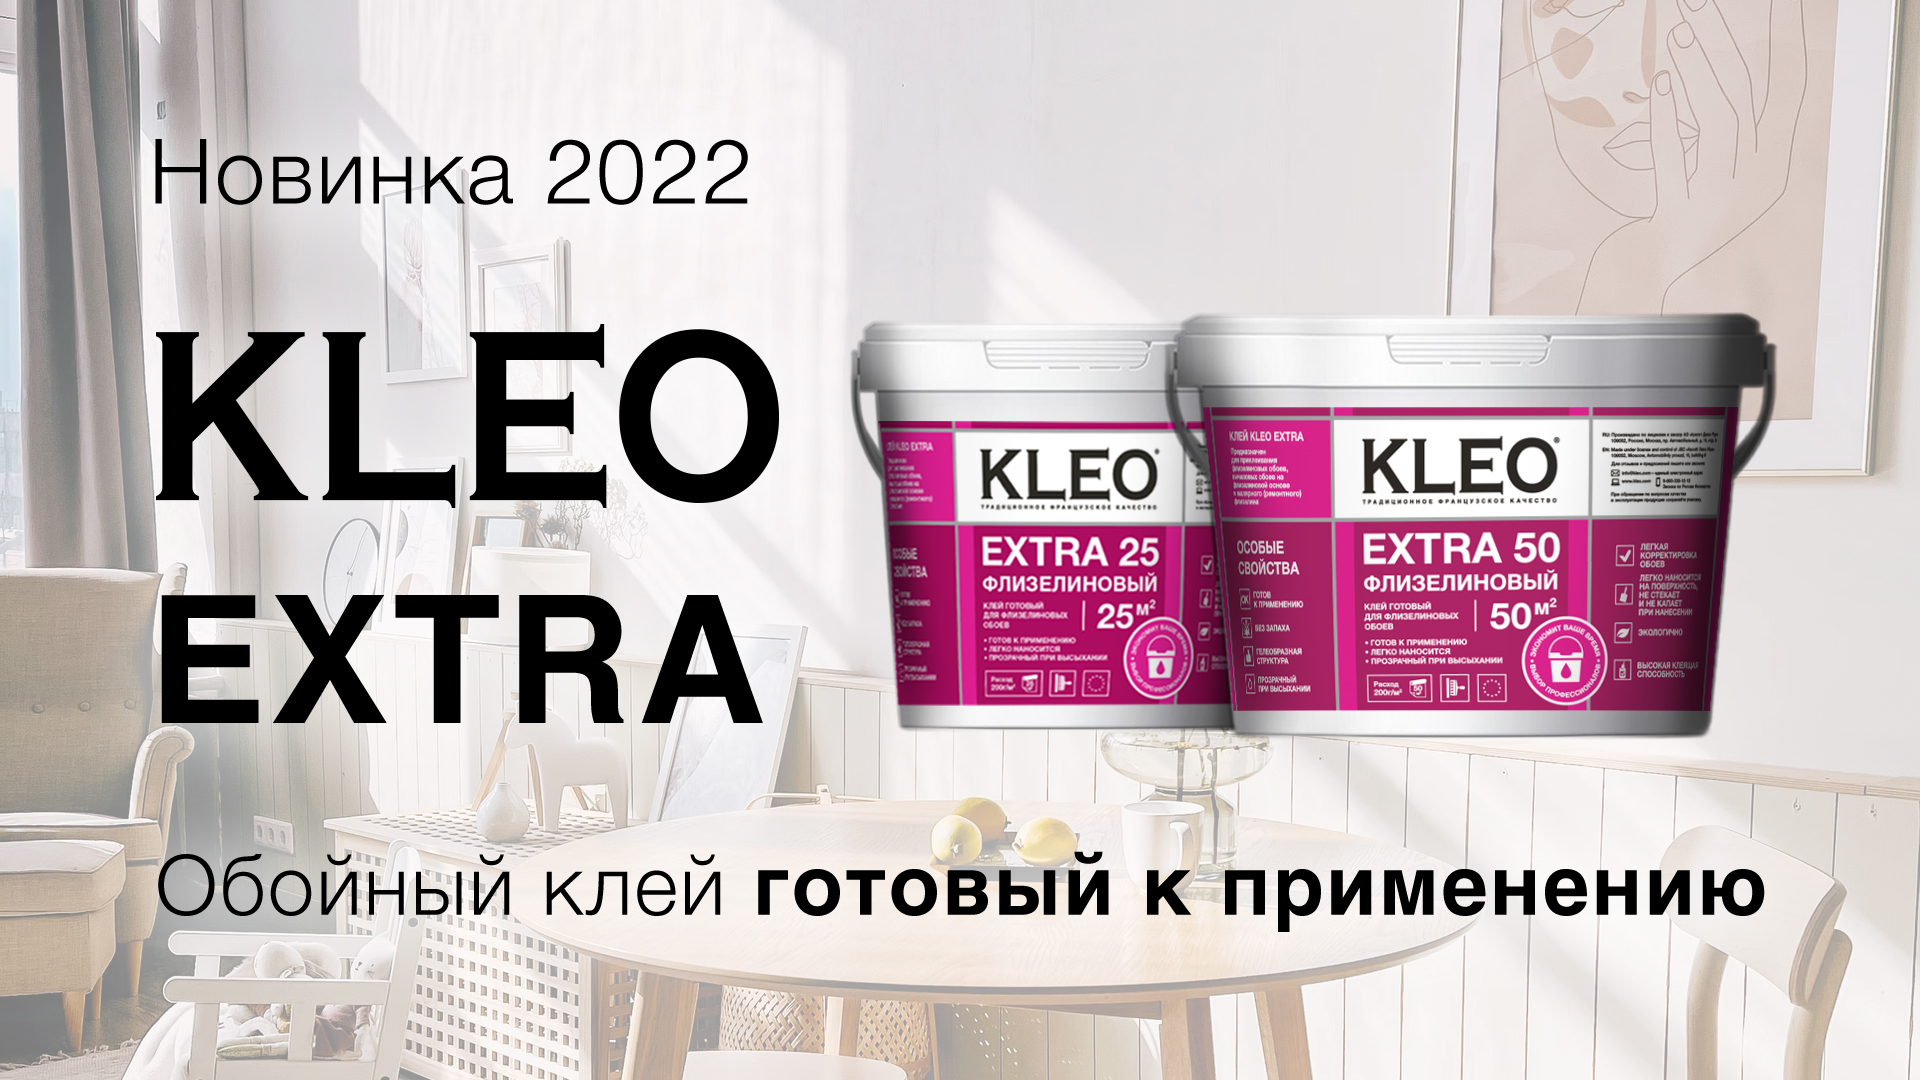 Новинка 2022 года - готовый к применению KLEO Extra!